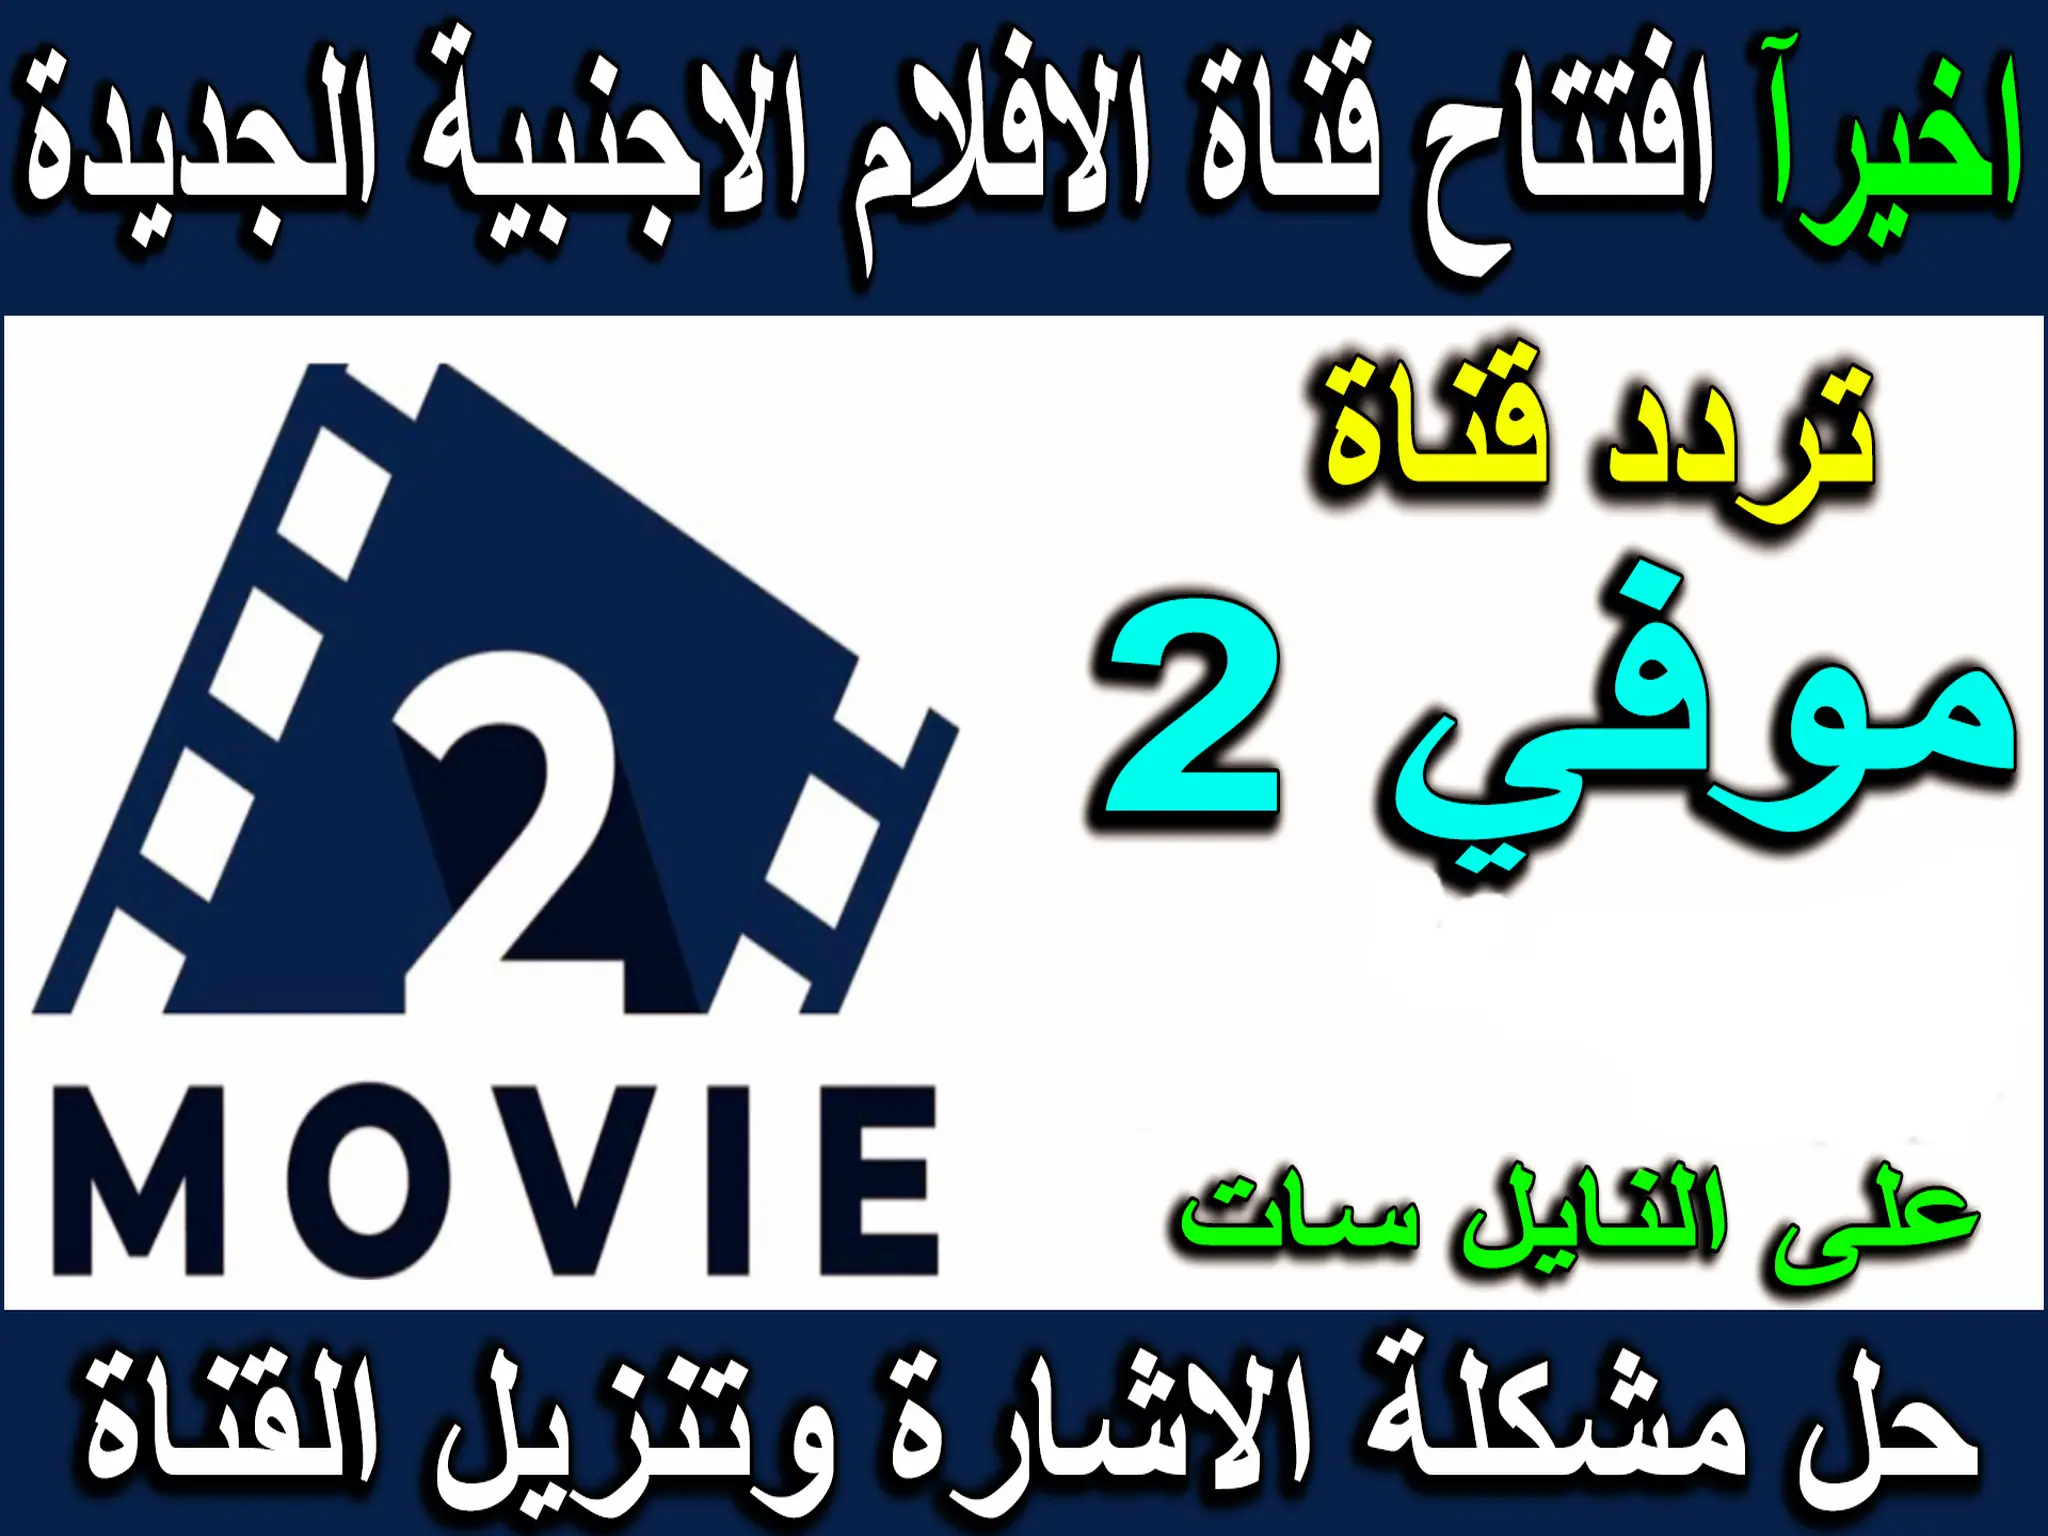 تردد قناة موفي تو movie 2 الجديدة 2023 علي النايل سات